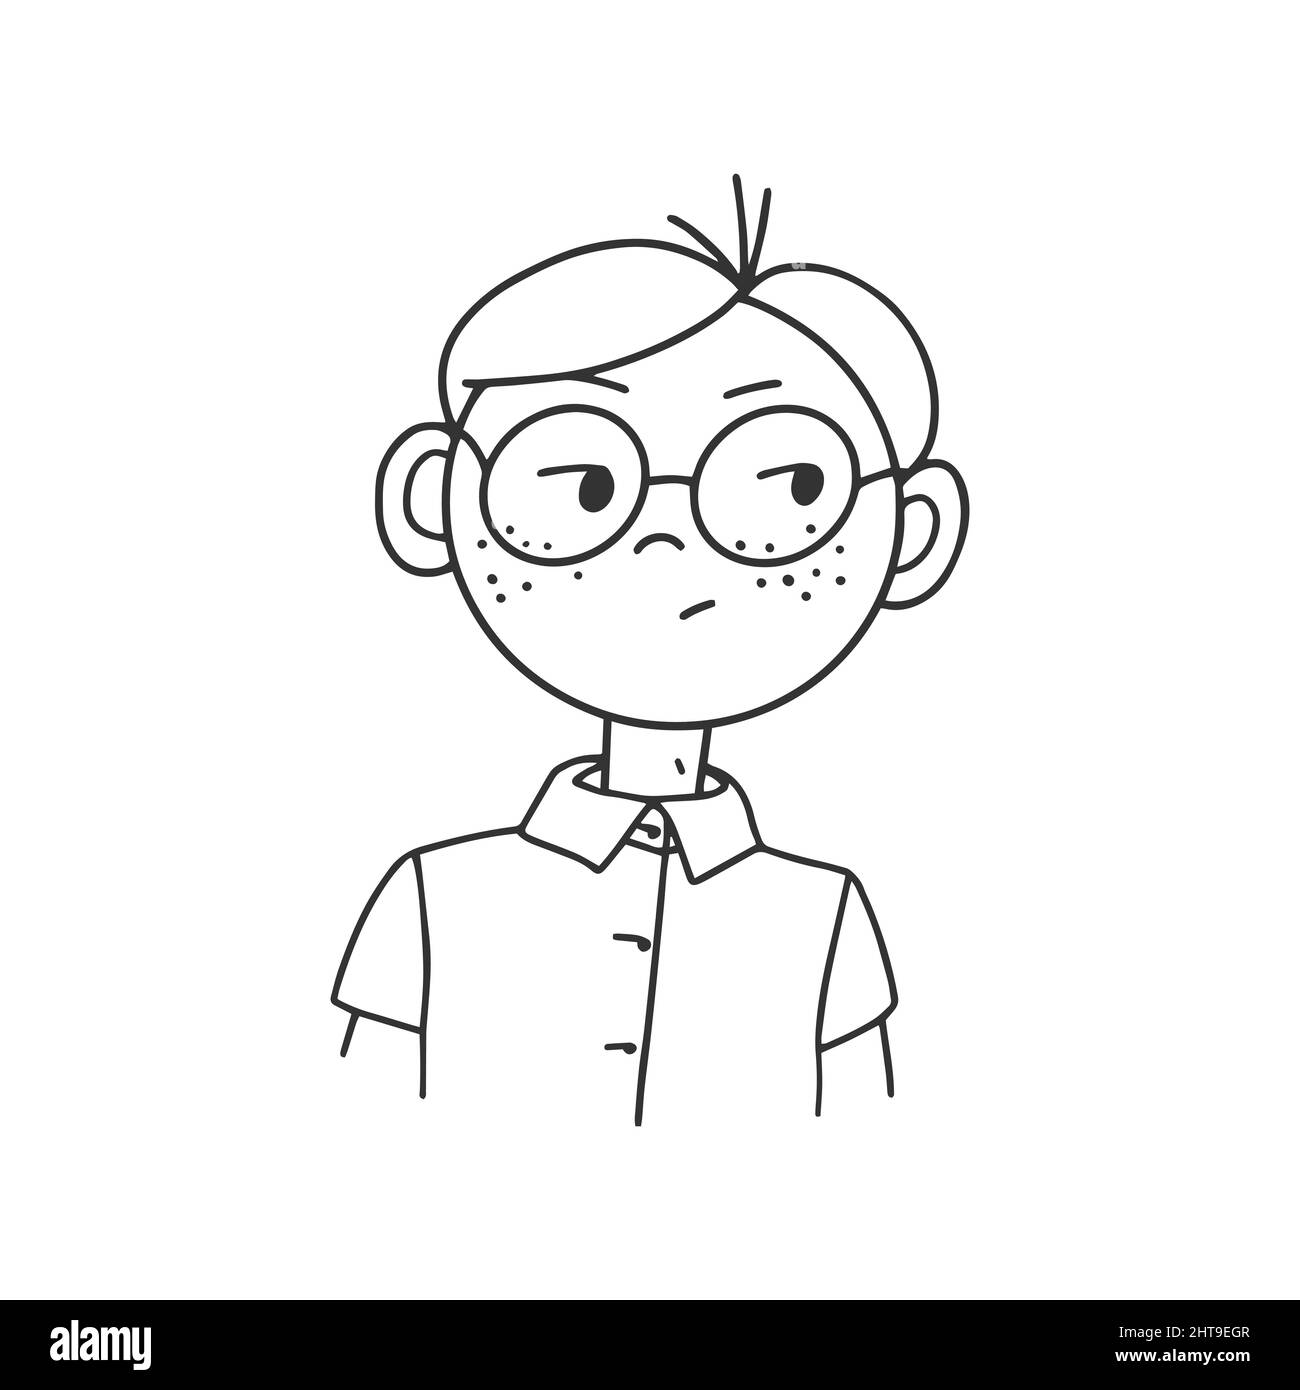 Disegno del contorno di un uomo cartoon con vetri. Doodle styleContour disegno di un uomo cartoon in occhiali con emozioni sul suo volto. Stile Doodle Illustrazione Vettoriale